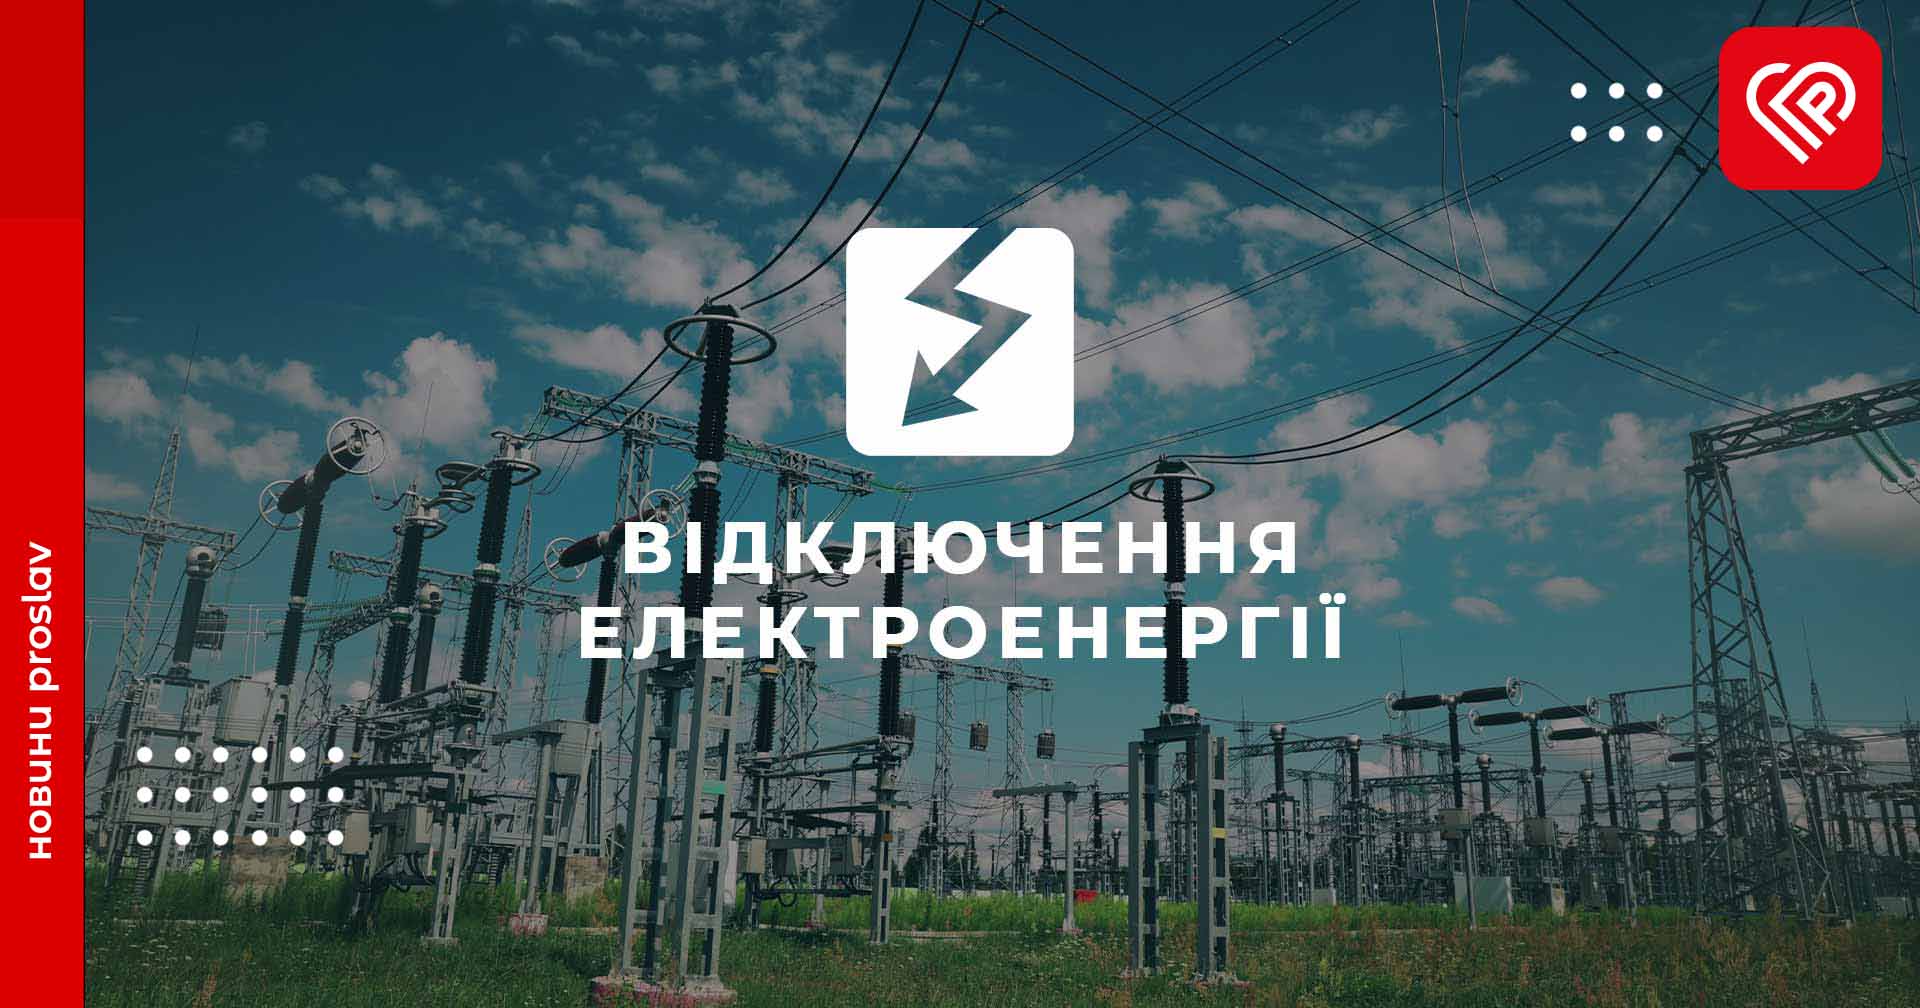 У Переяславі 1 квітня не буде світла: графік ДТЕК і адреси